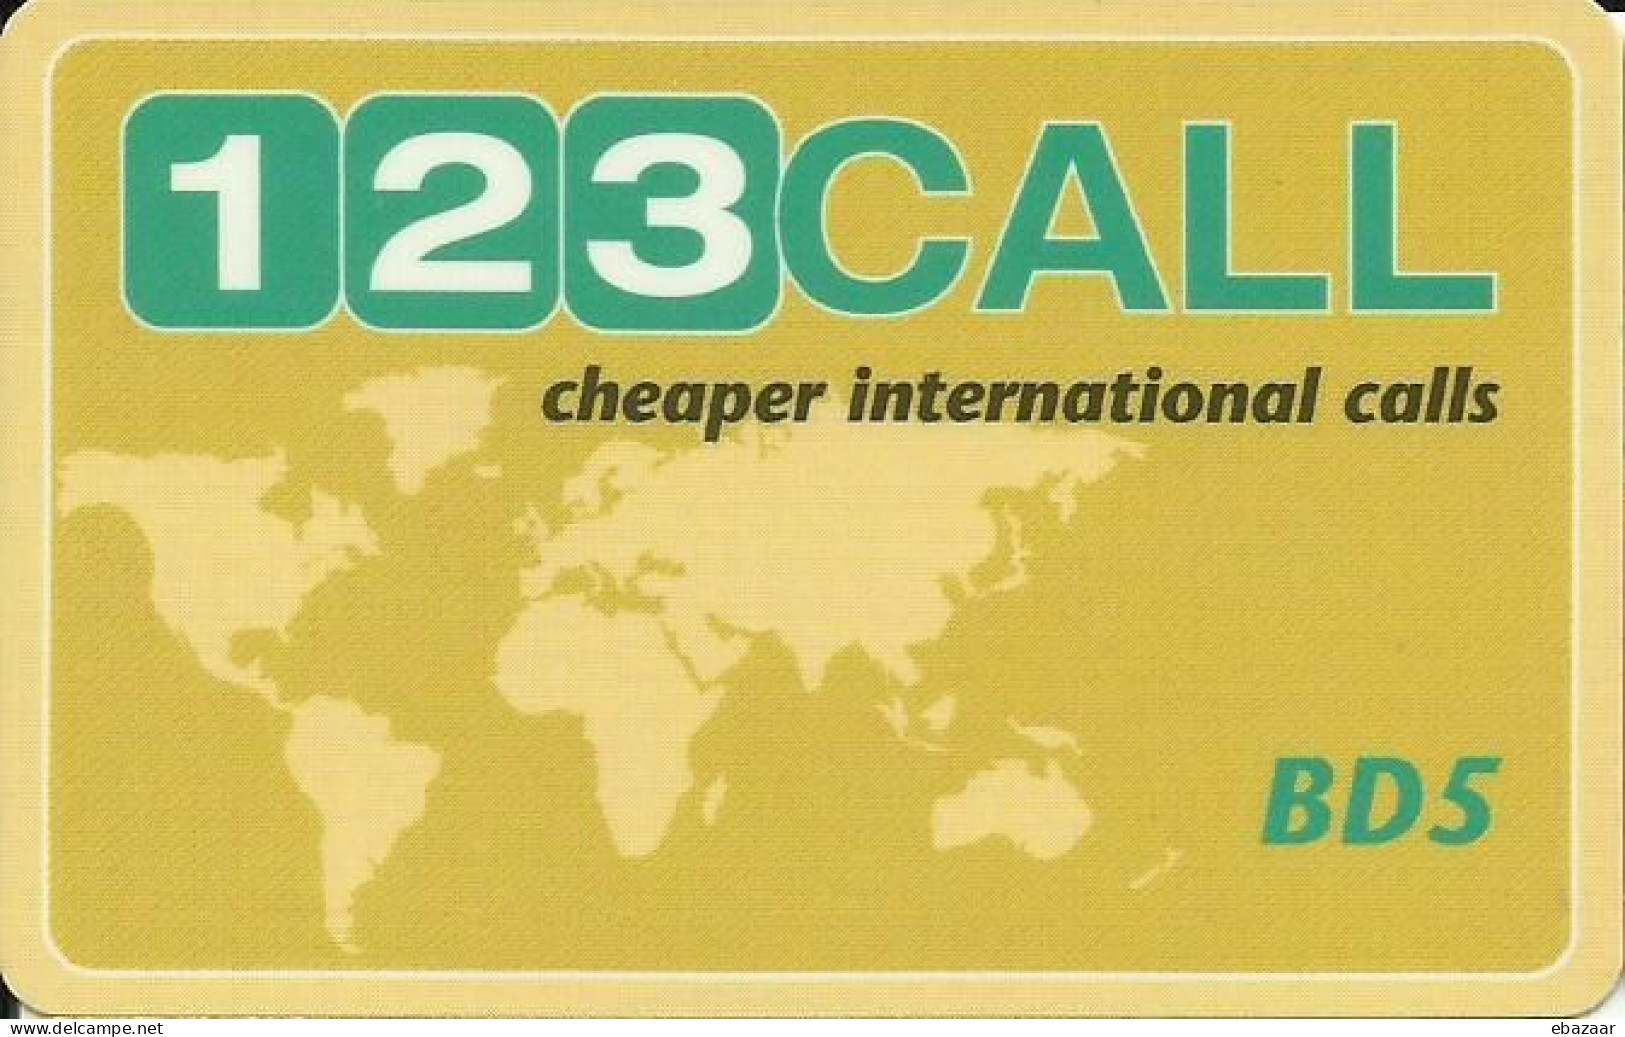 Bahrain 123 CALL BD 5 Prepaid Phonecard Used - Bahrein